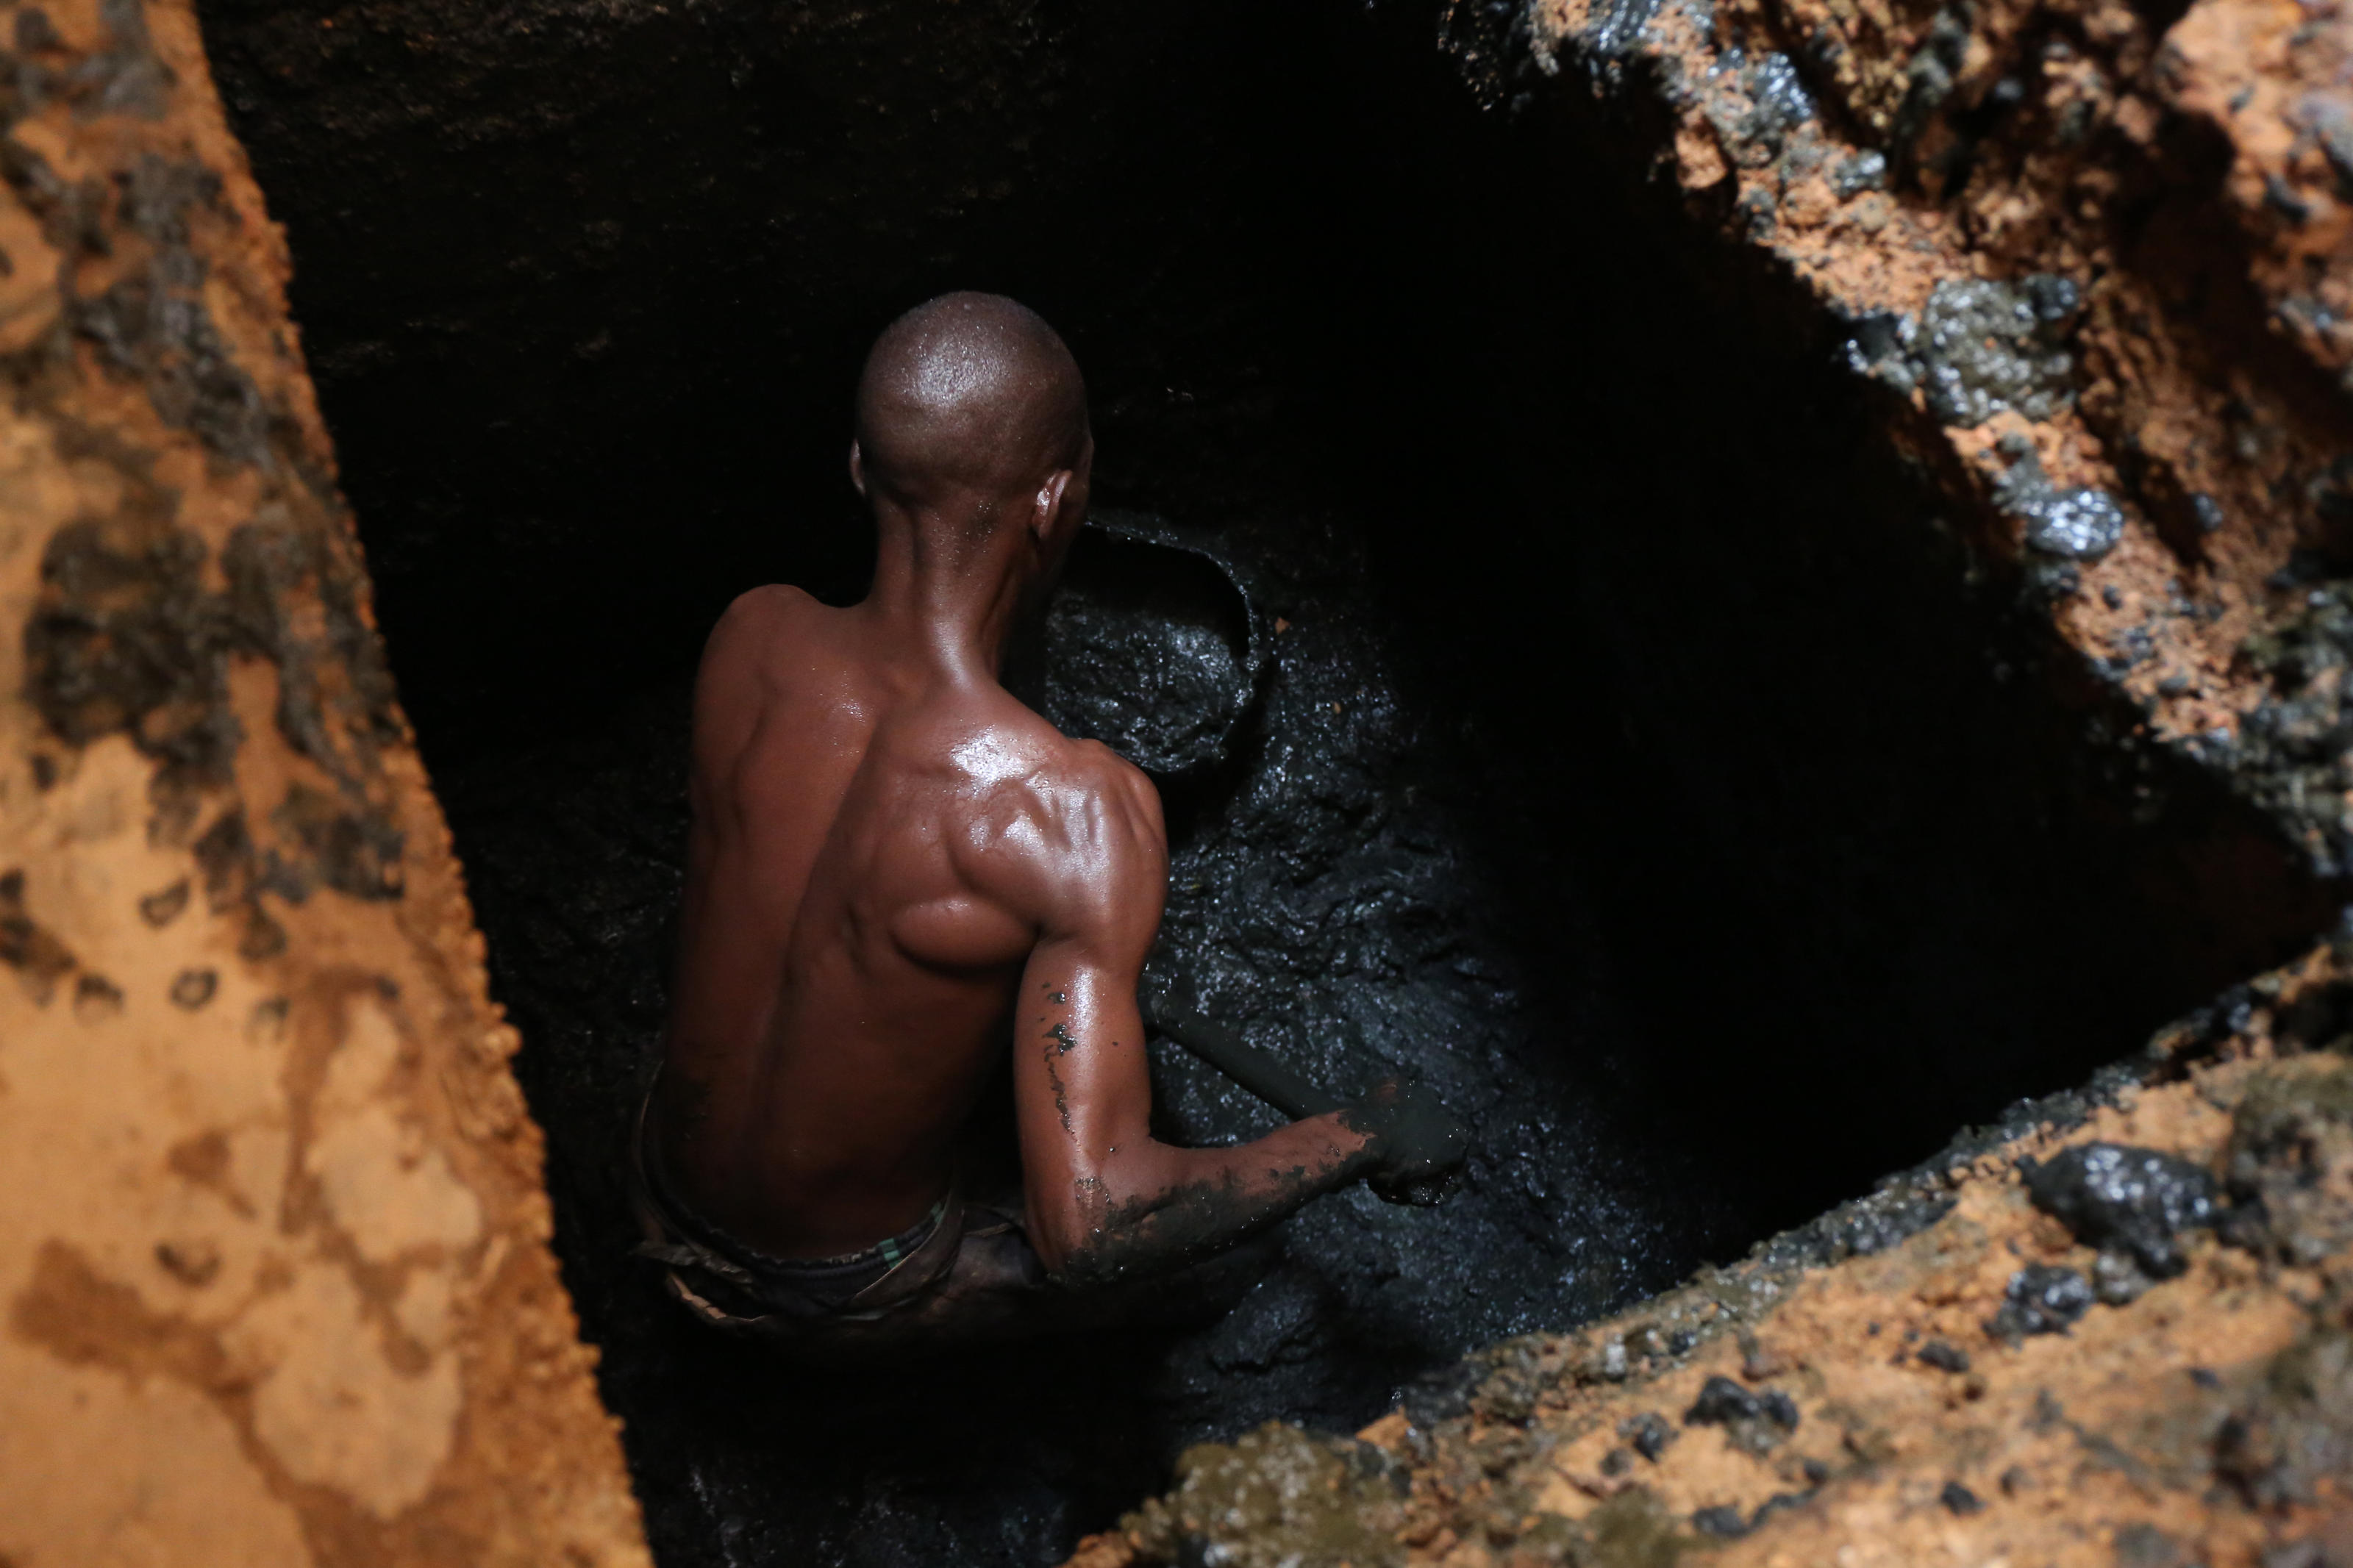 Paul Zongo, manual emptier, inside a pit, emptying a family latrine in Ouagadougou, Burkina Faso.